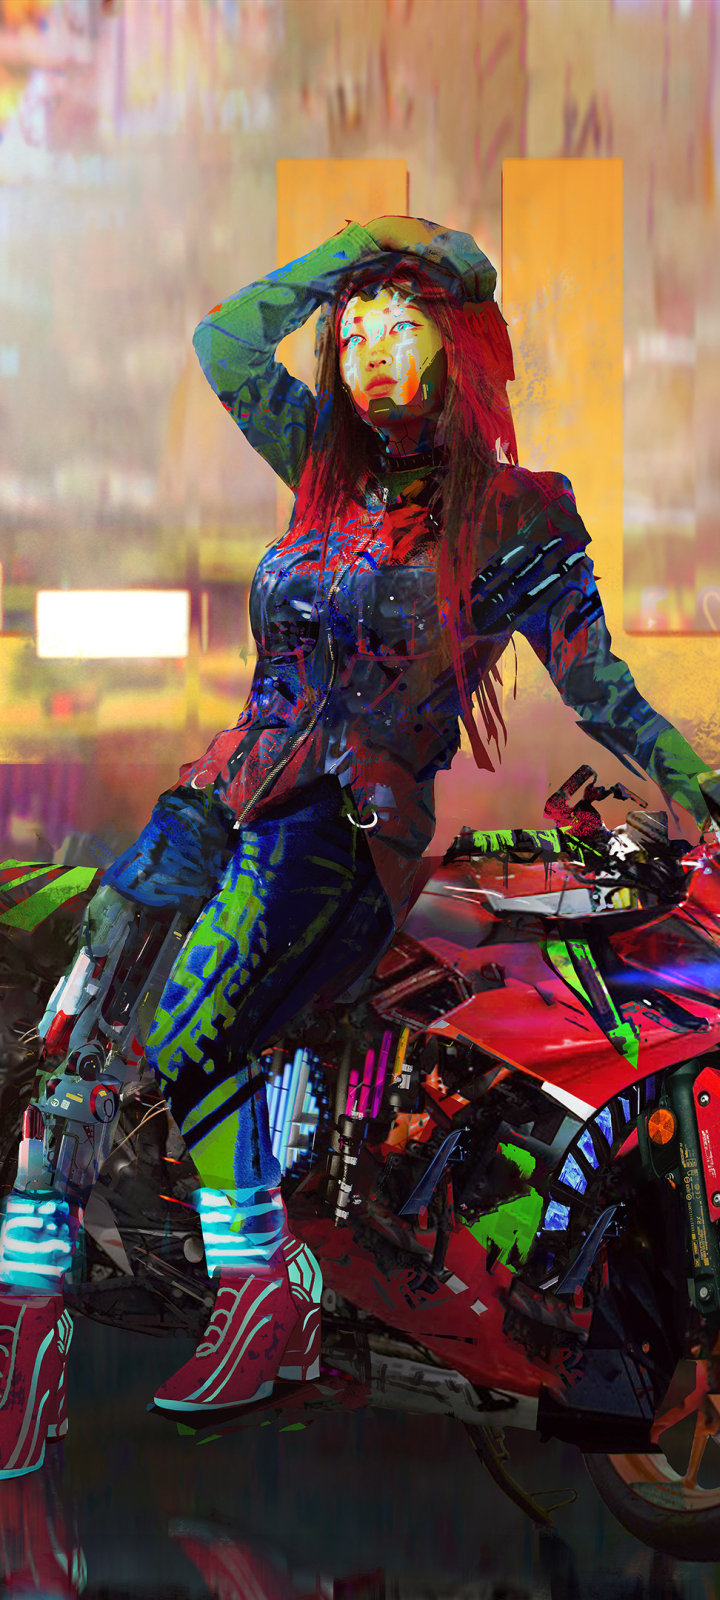 720x1600 Cyberpunk 2077 Girl 4k Cool 720x1600 Resolution Wallpaper Hd 0018